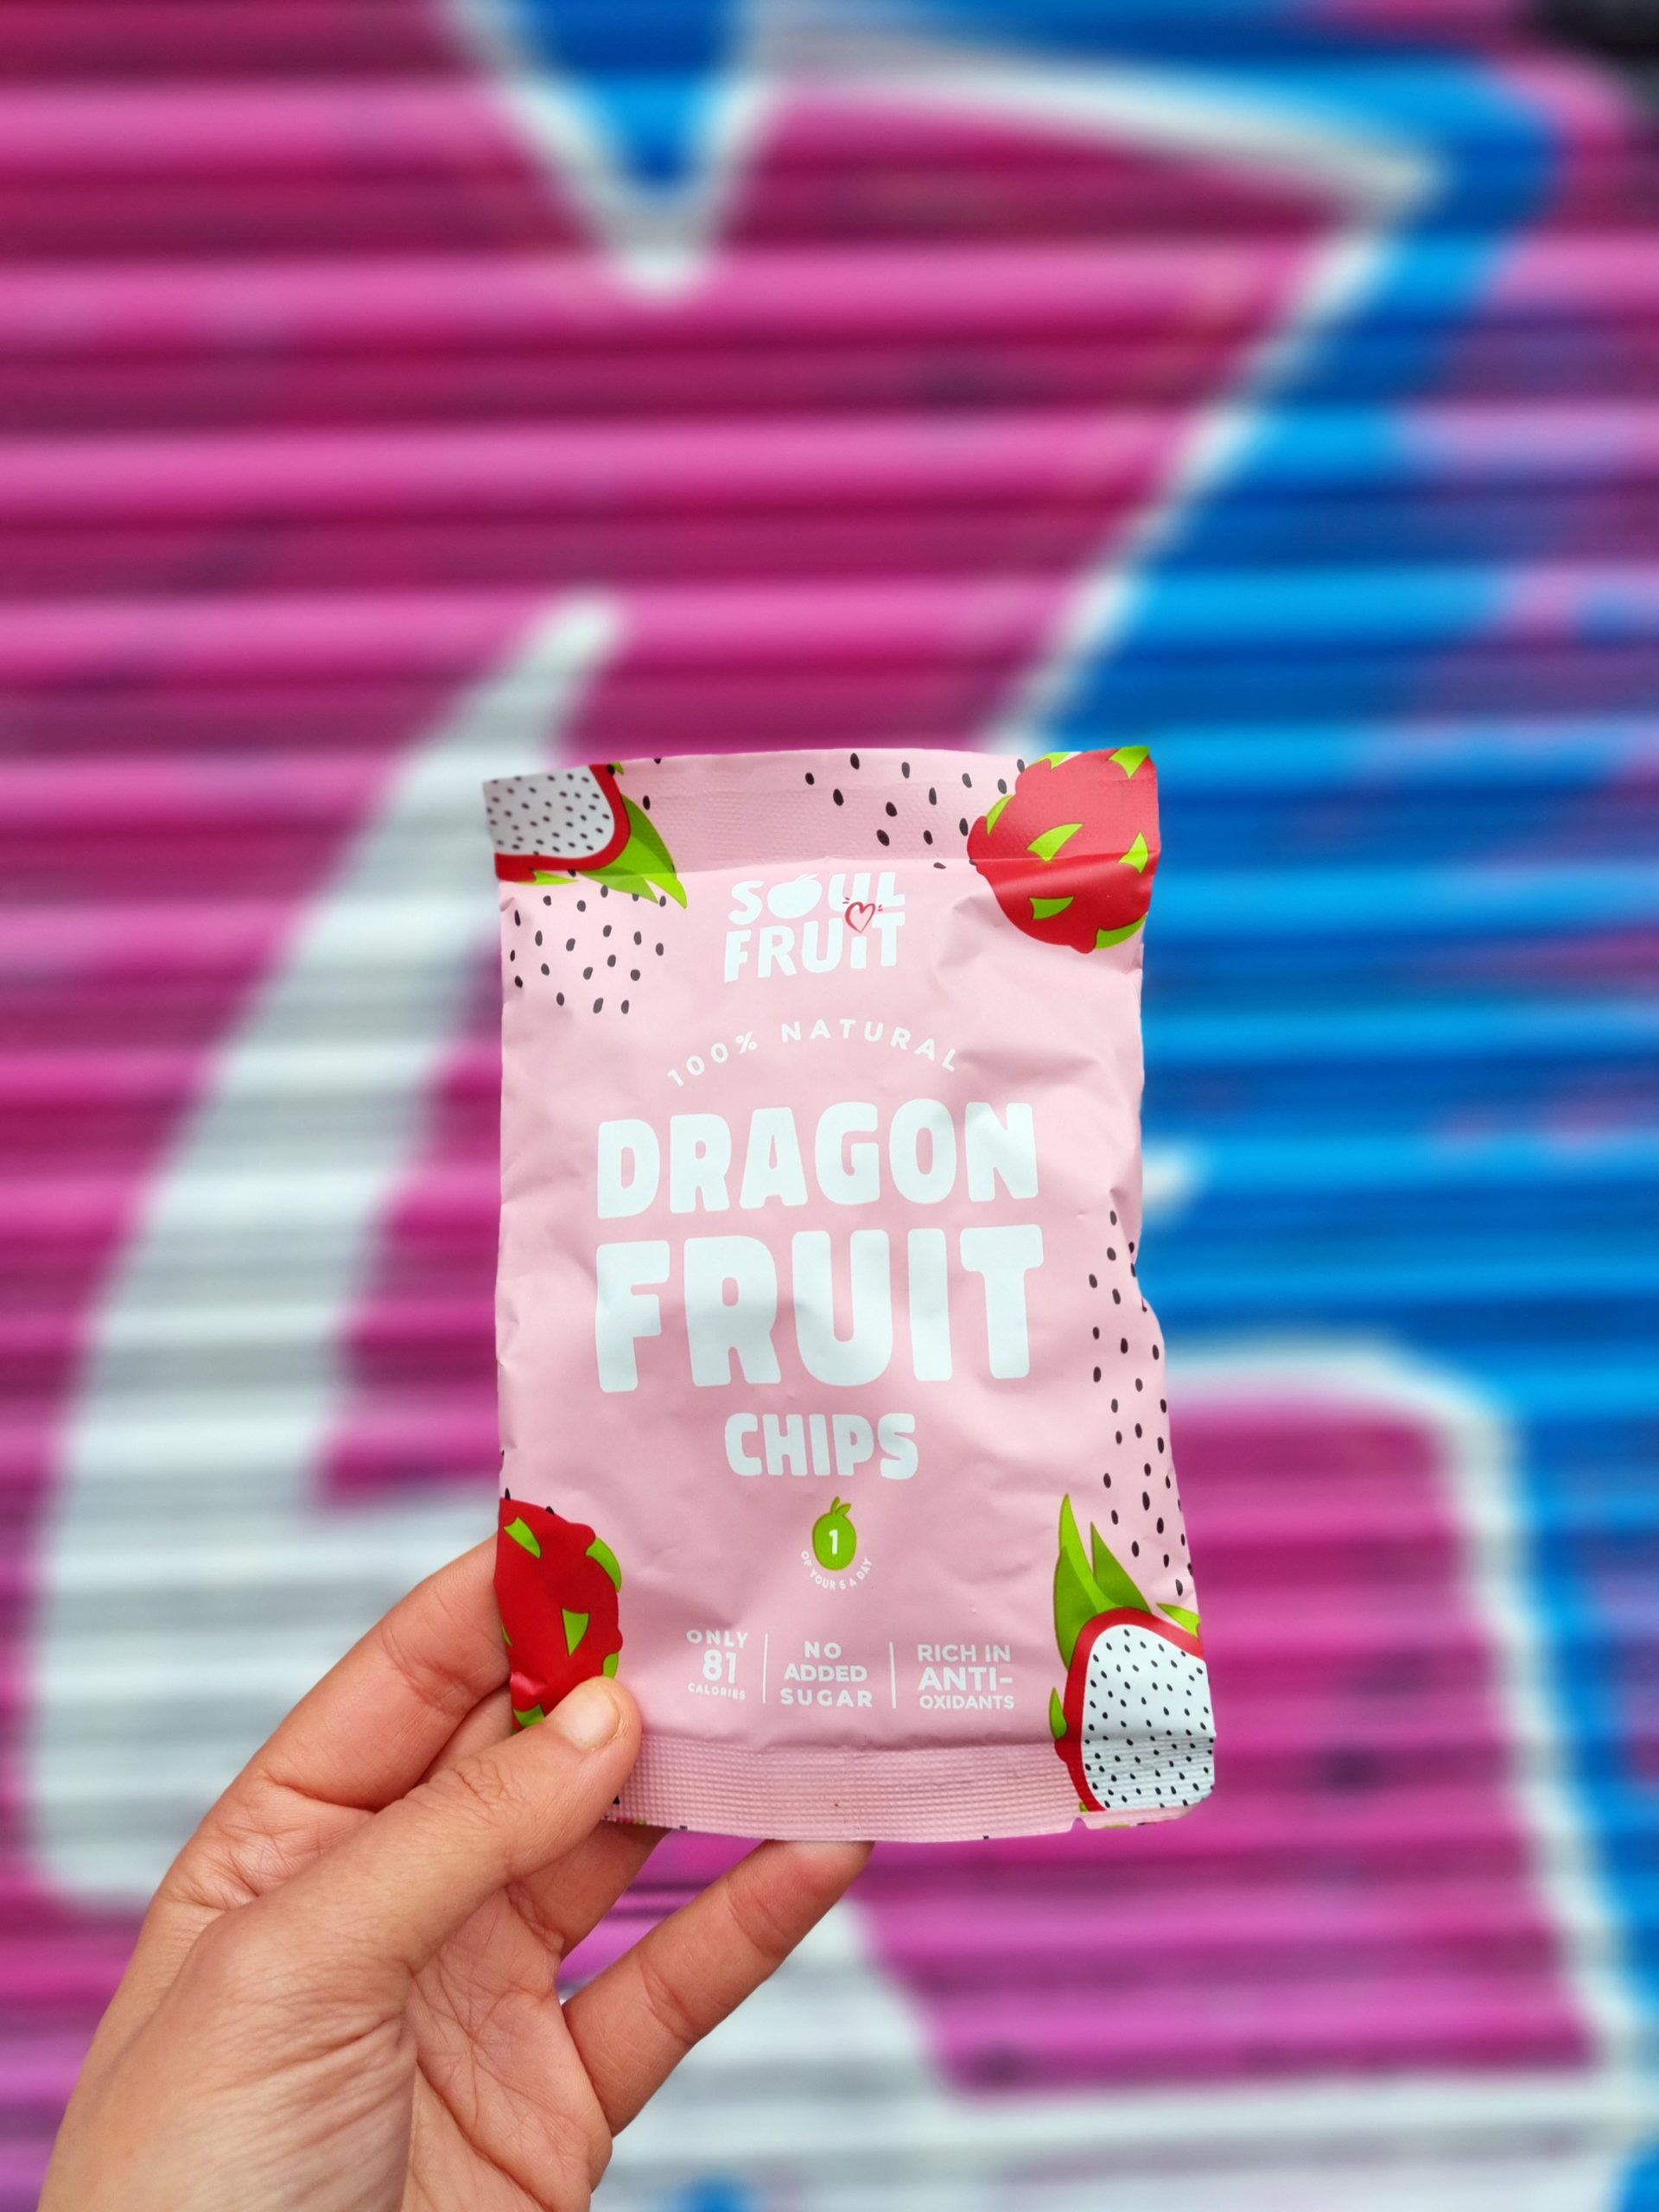 <img src="dragonfruit.jpg" alt="dragonfruit soul fruit chips"/> 